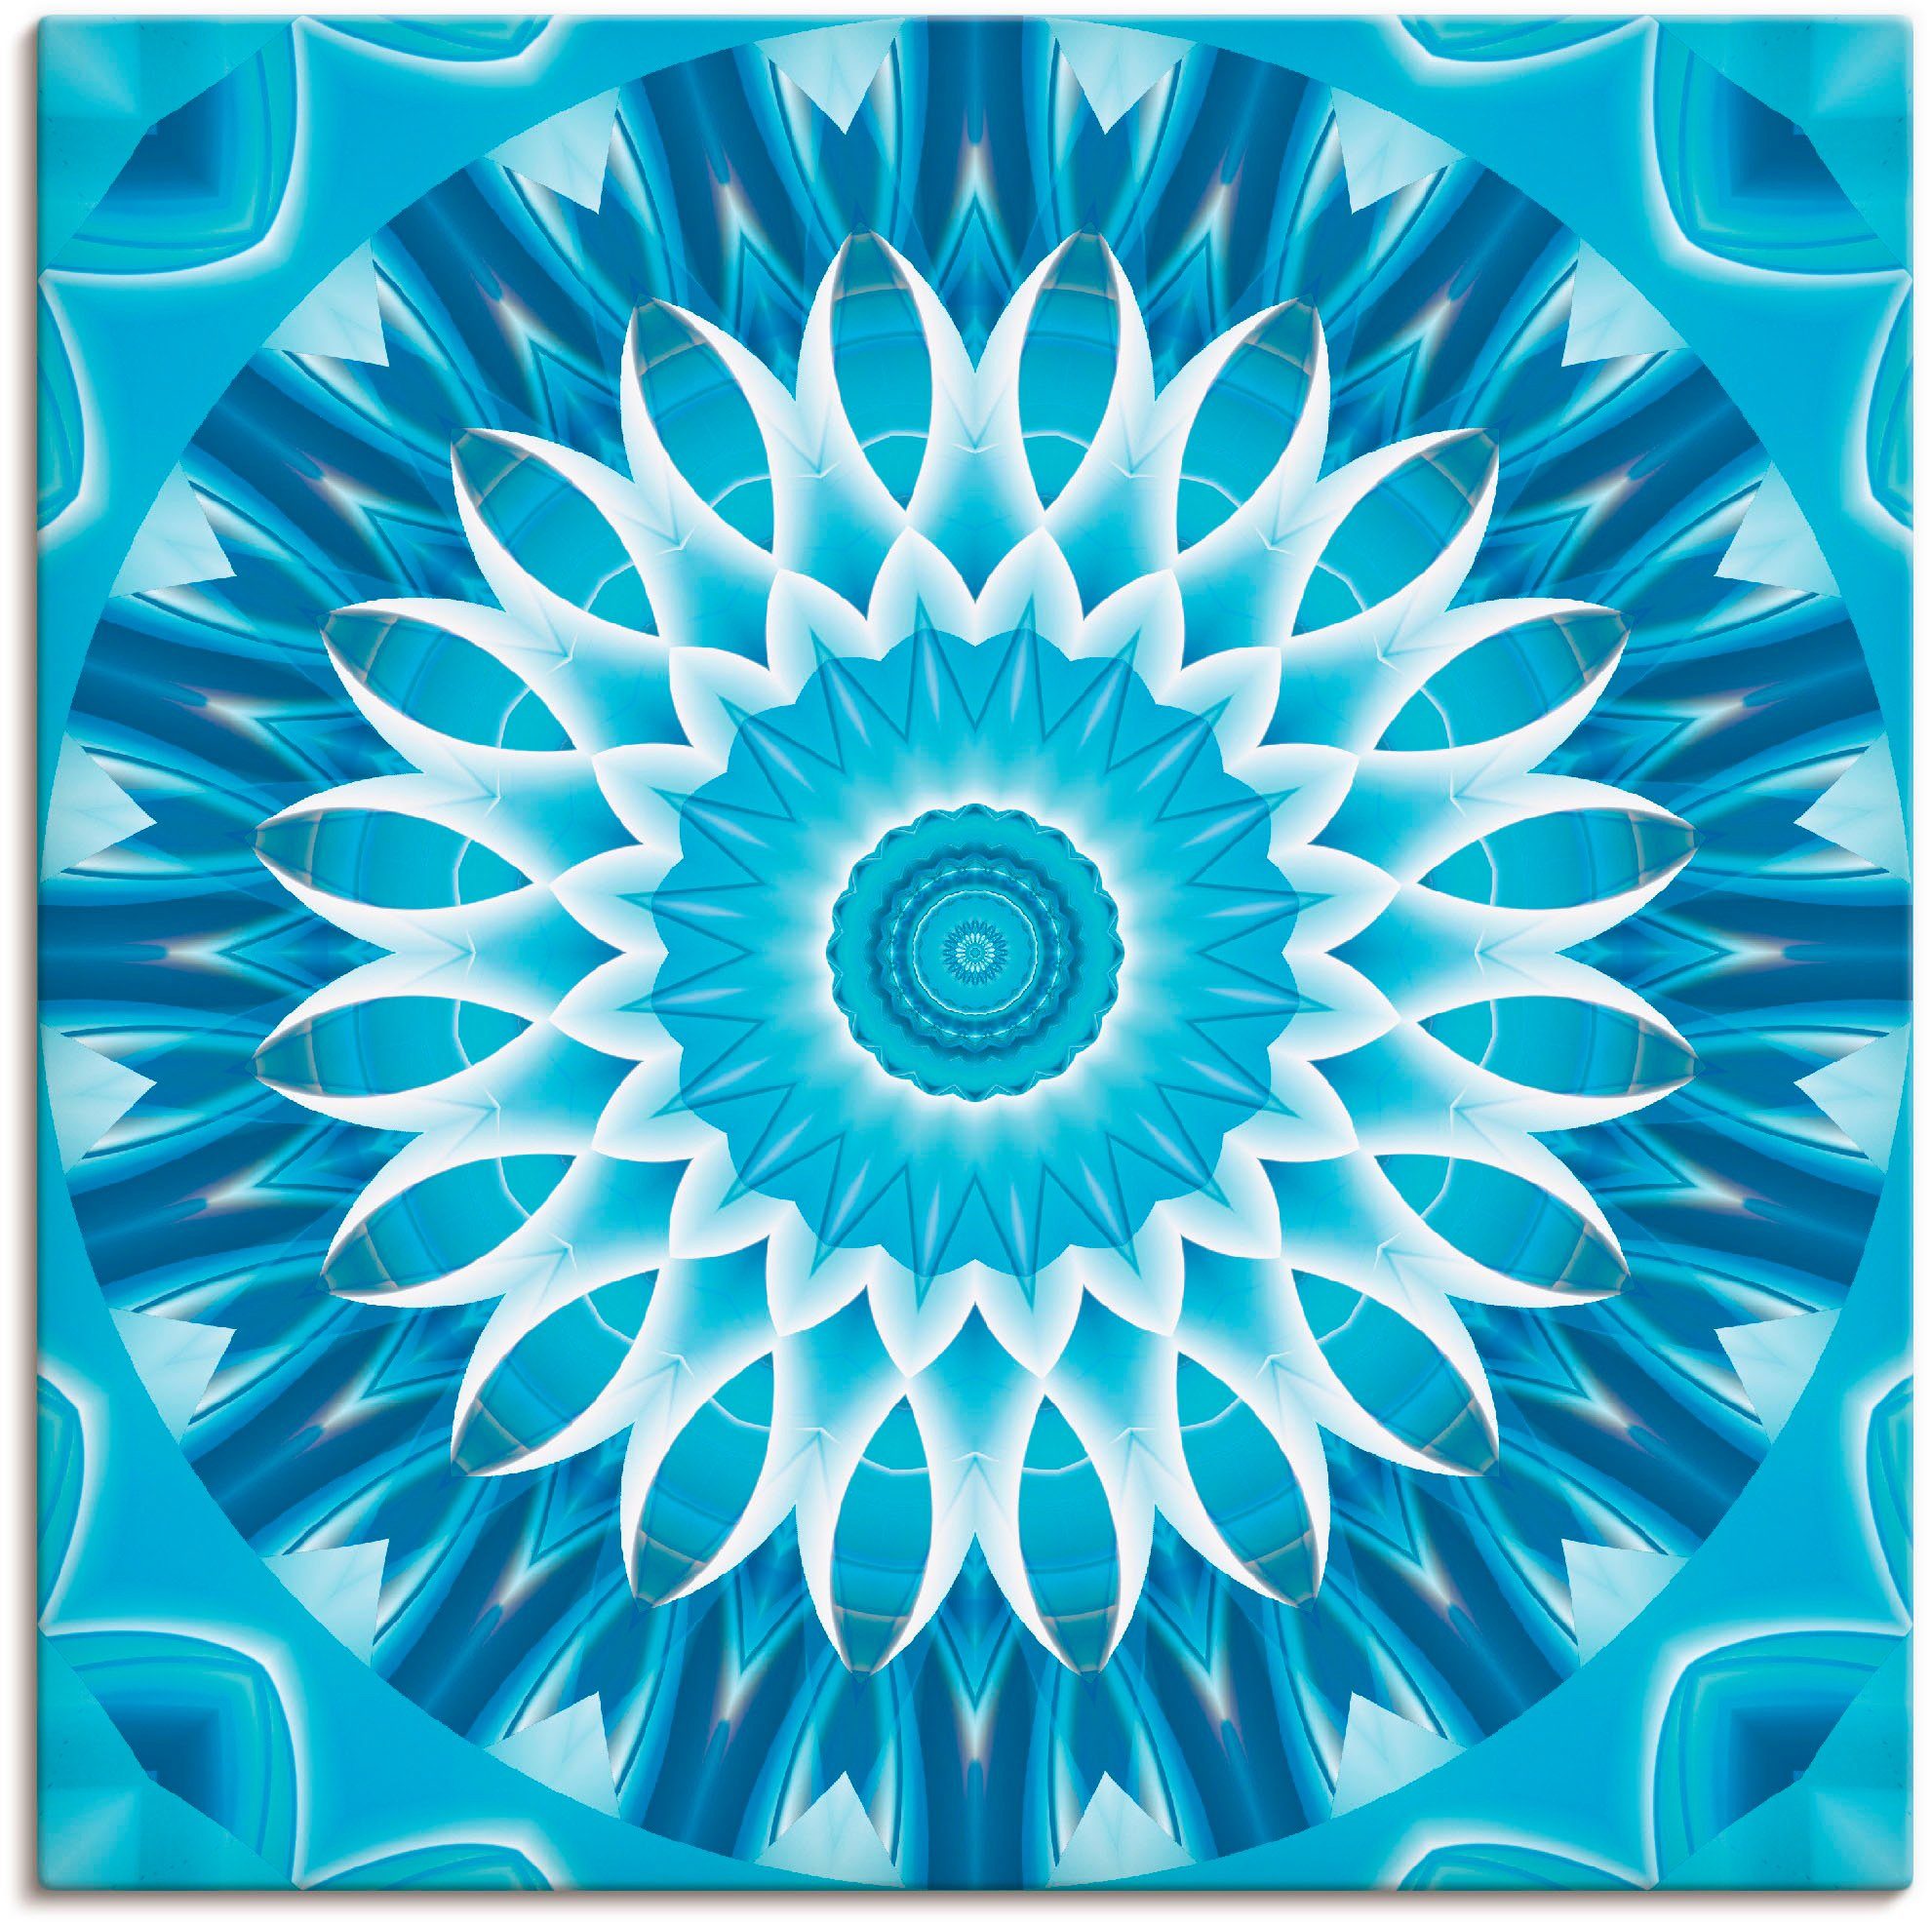 Artland Artprint Mandala blauw bloem in vele afmetingen & productsoorten - artprint van aluminium / artprint voor buiten, artprint op linnen, poster, muursticker / wandfolie ook ge